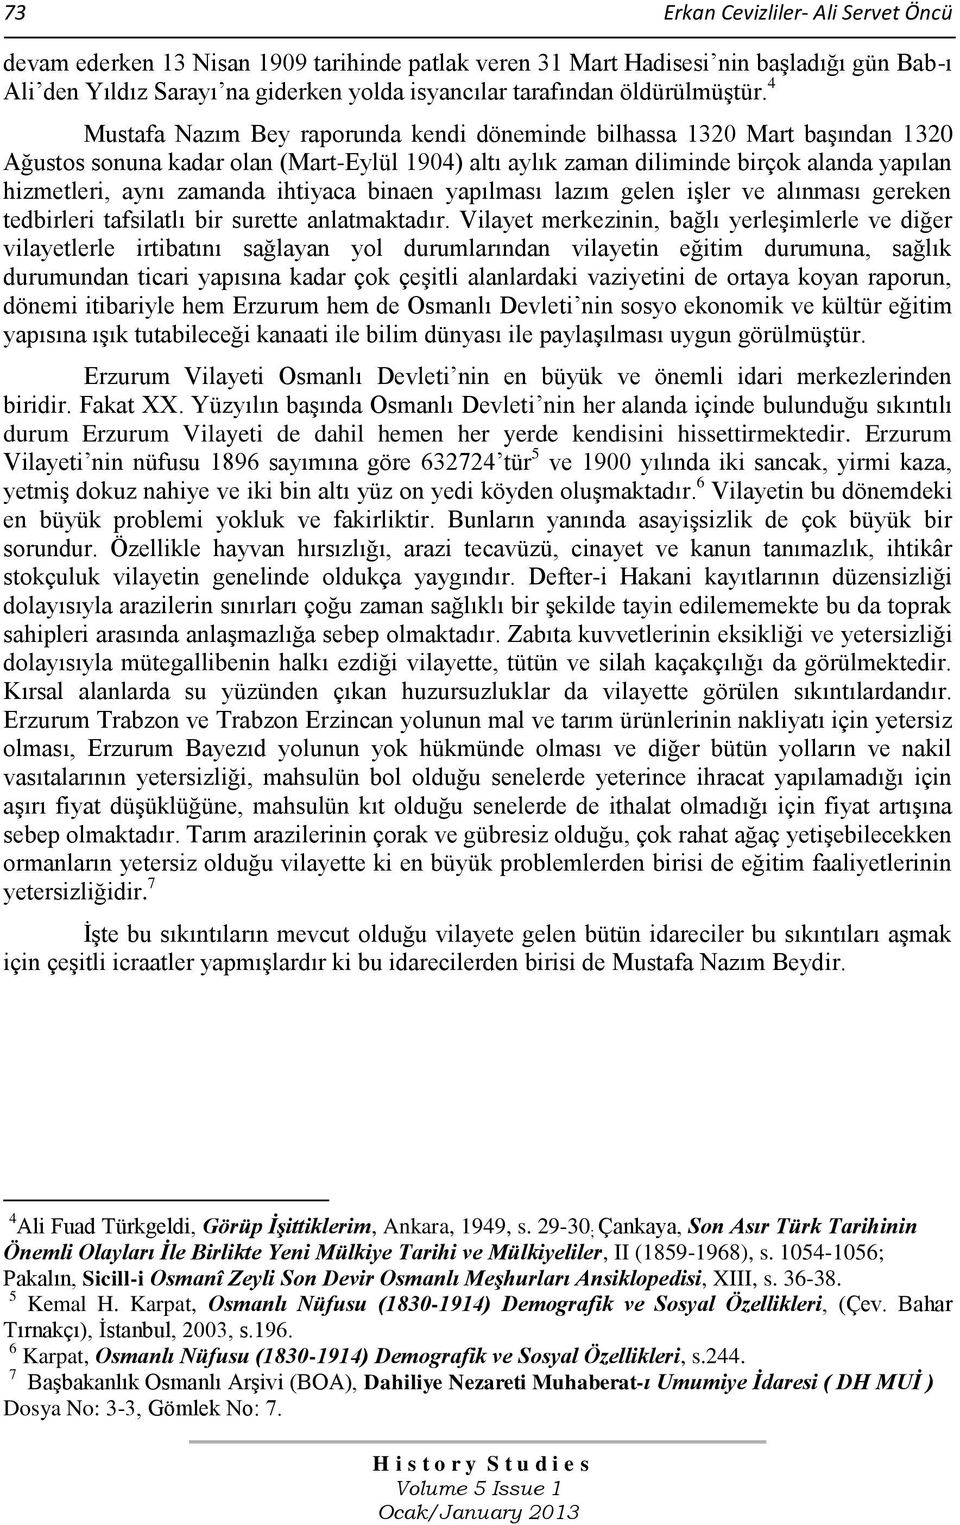 4 Mustafa Nazım Bey raporunda kendi döneminde bilhassa 1320 Mart başından 1320 Ağustos sonuna kadar olan (Mart-Eylül 1904) altı aylık zaman diliminde birçok alanda yapılan hizmetleri, aynı zamanda